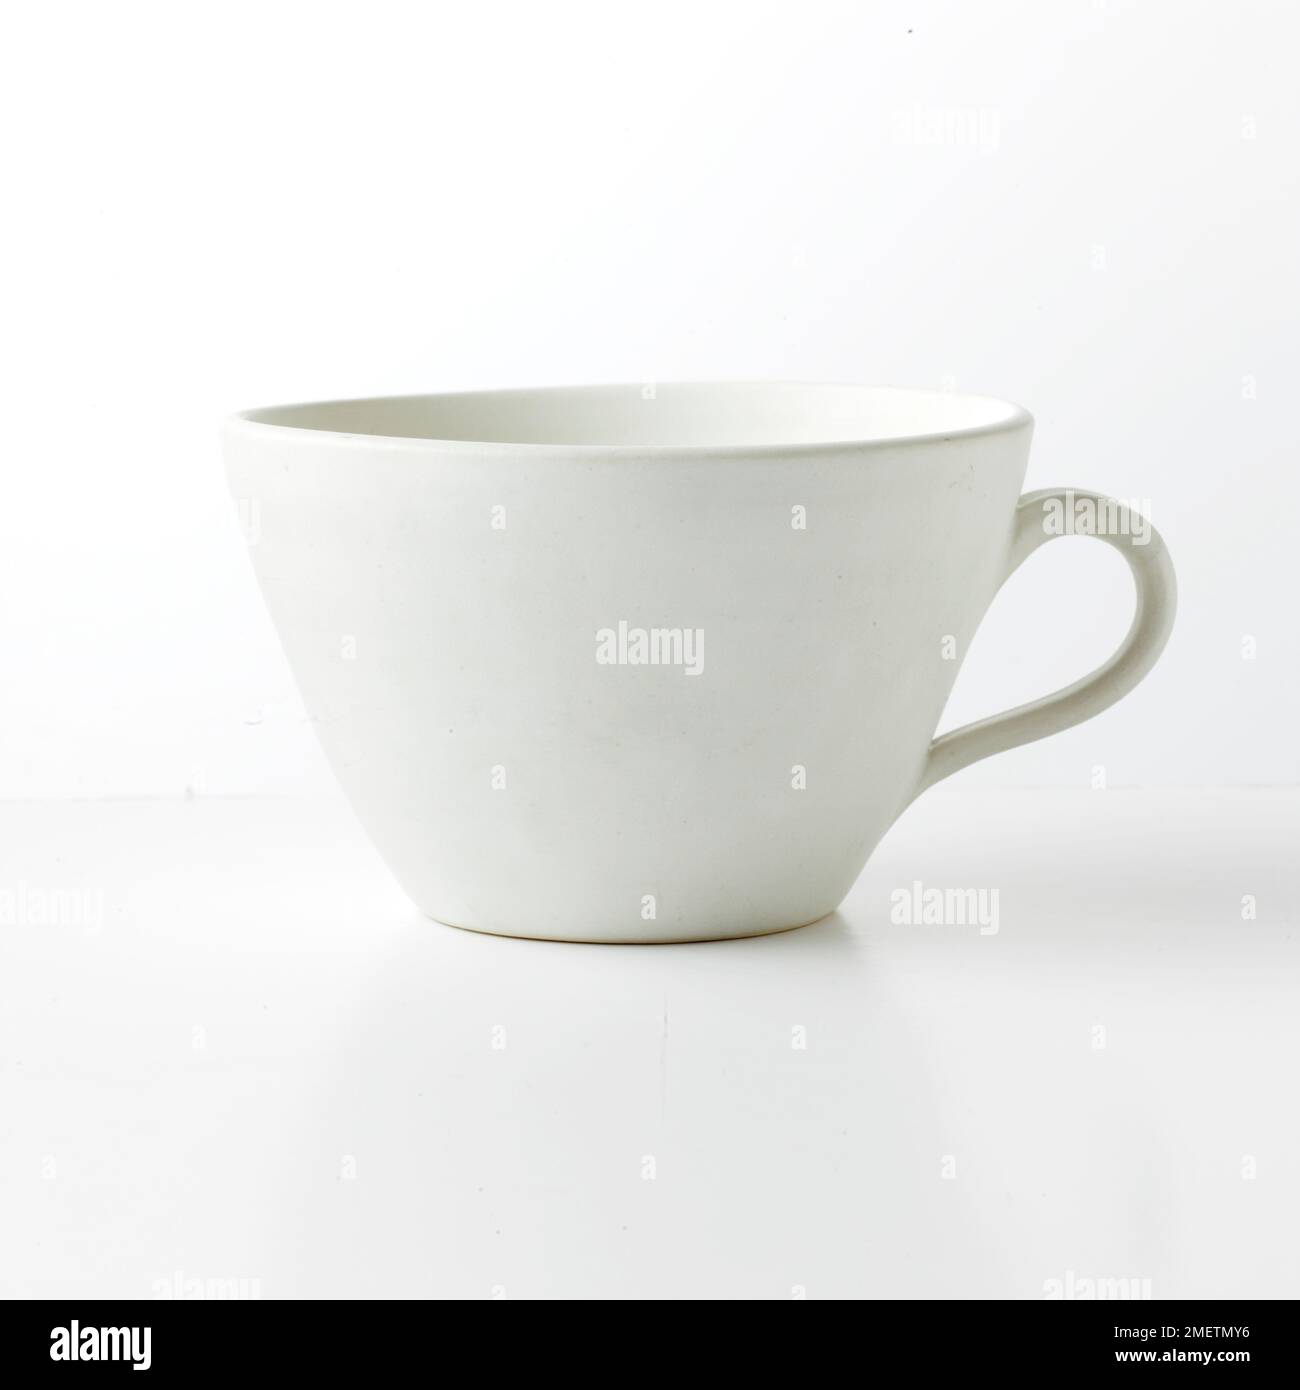 Earthenware mug Stock Photo